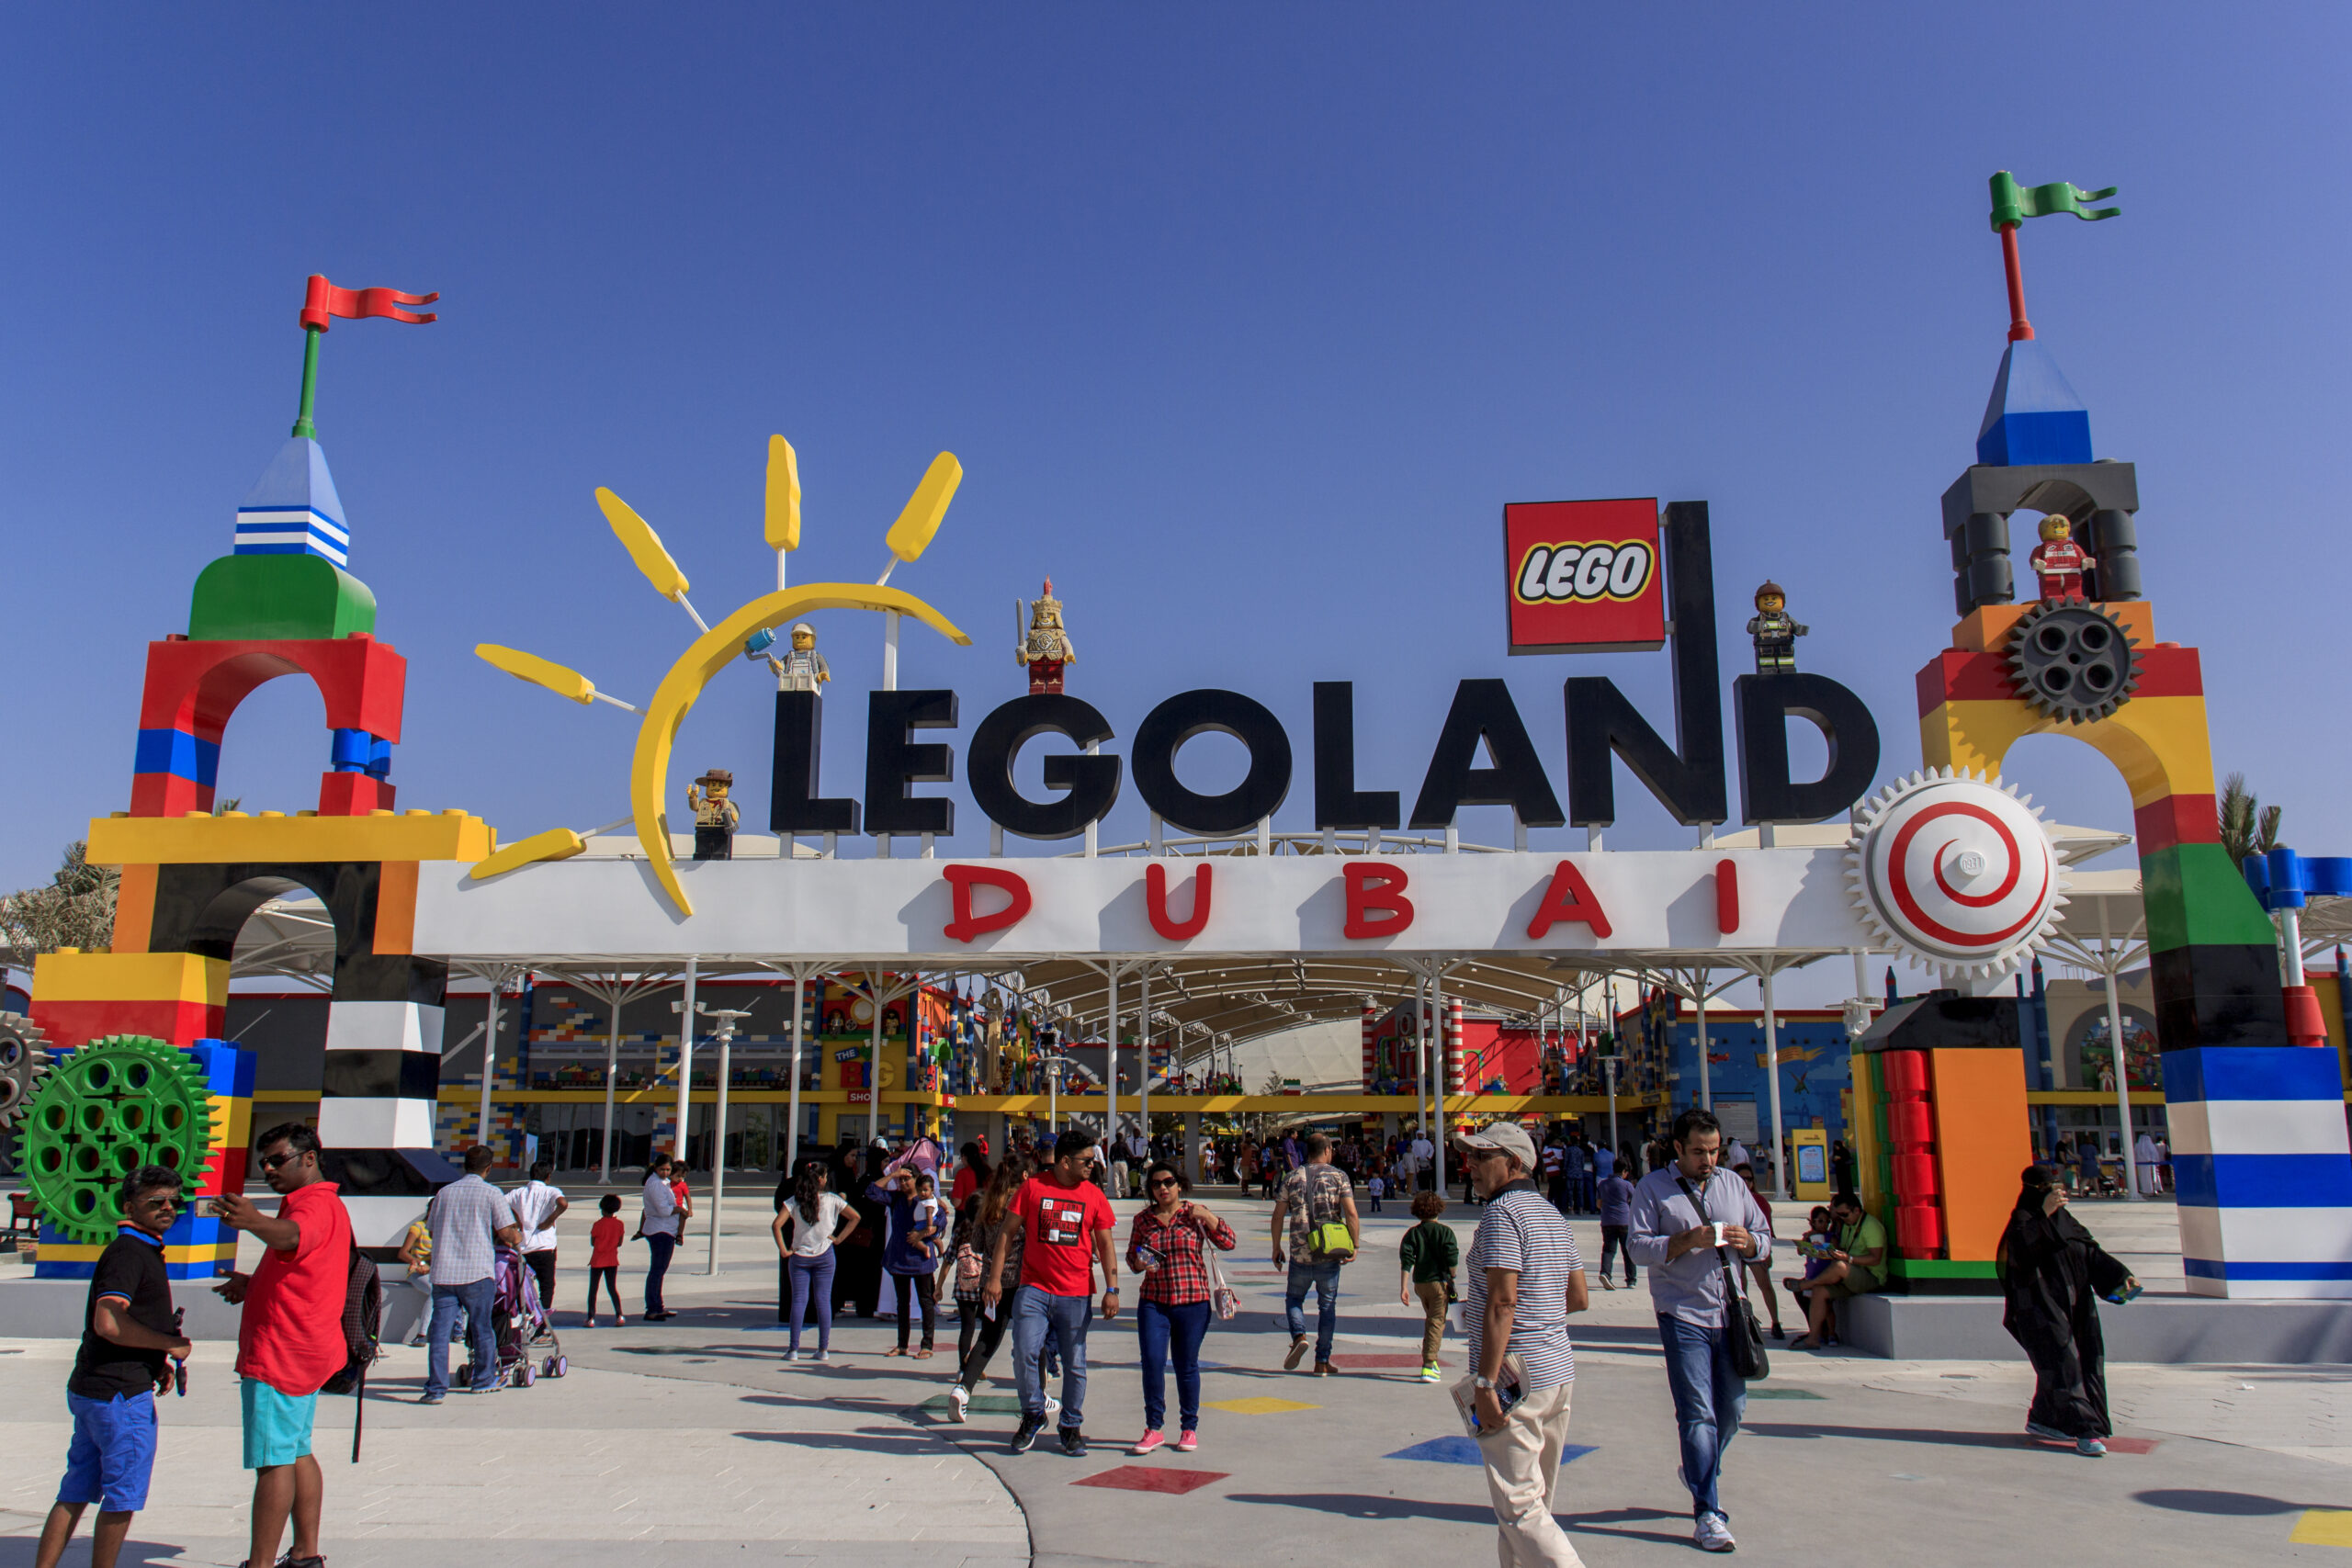 Motiongate Dubai Theme Park - Legoland Dubai